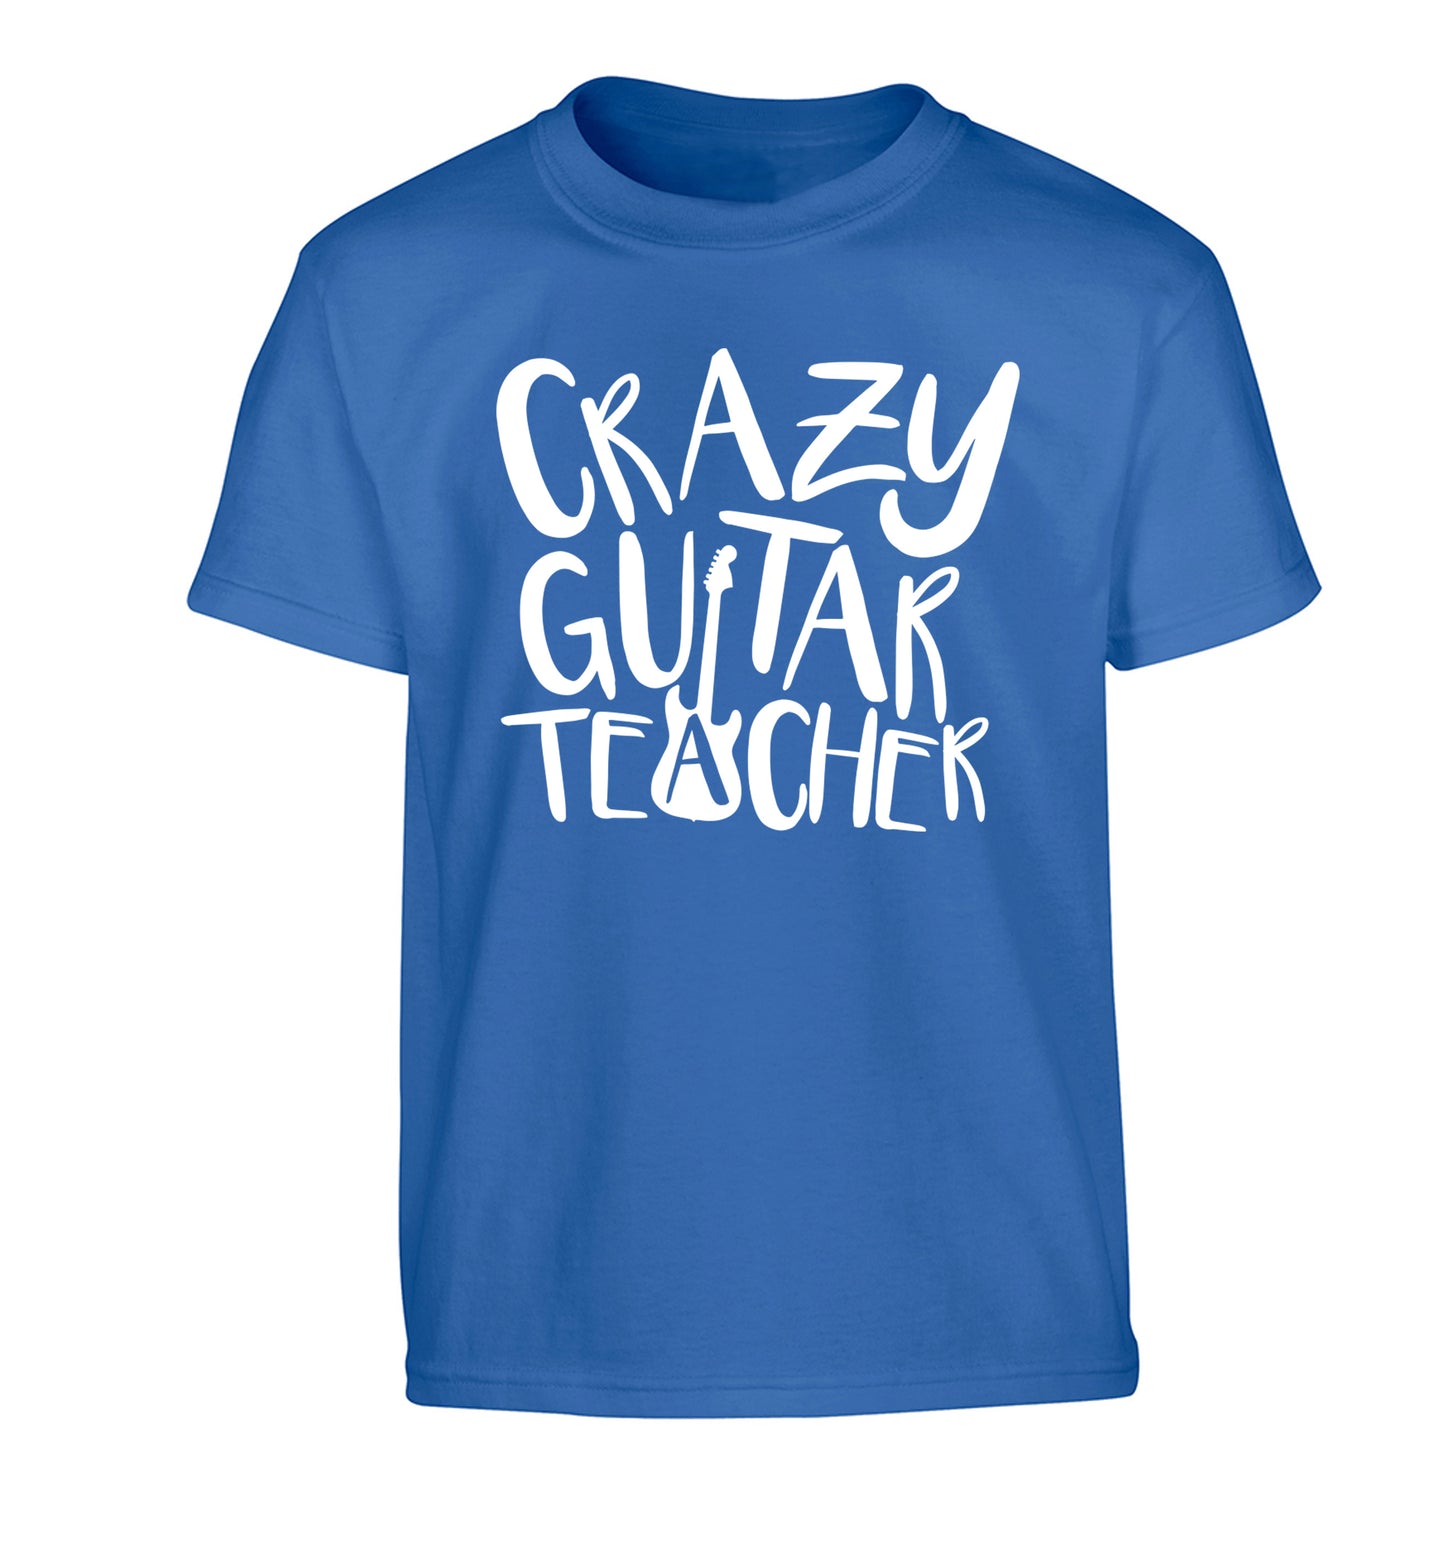 Crazy guitar teacher Children's blue Tshirt 12-13 Years